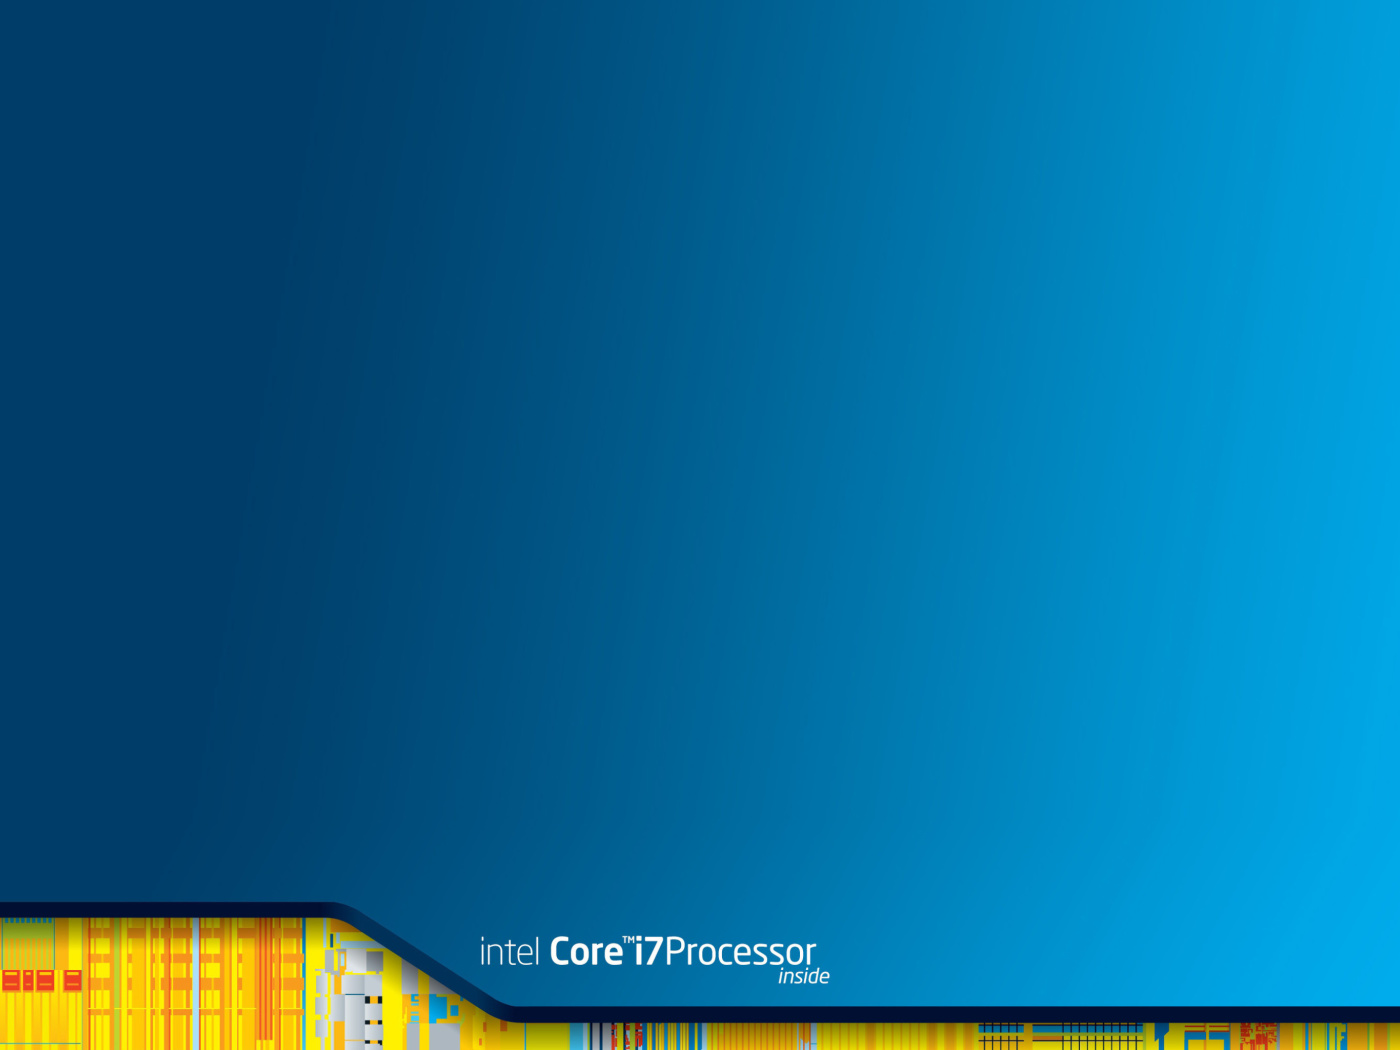 Intel Core i7 Processor wallpaper 1400x1050